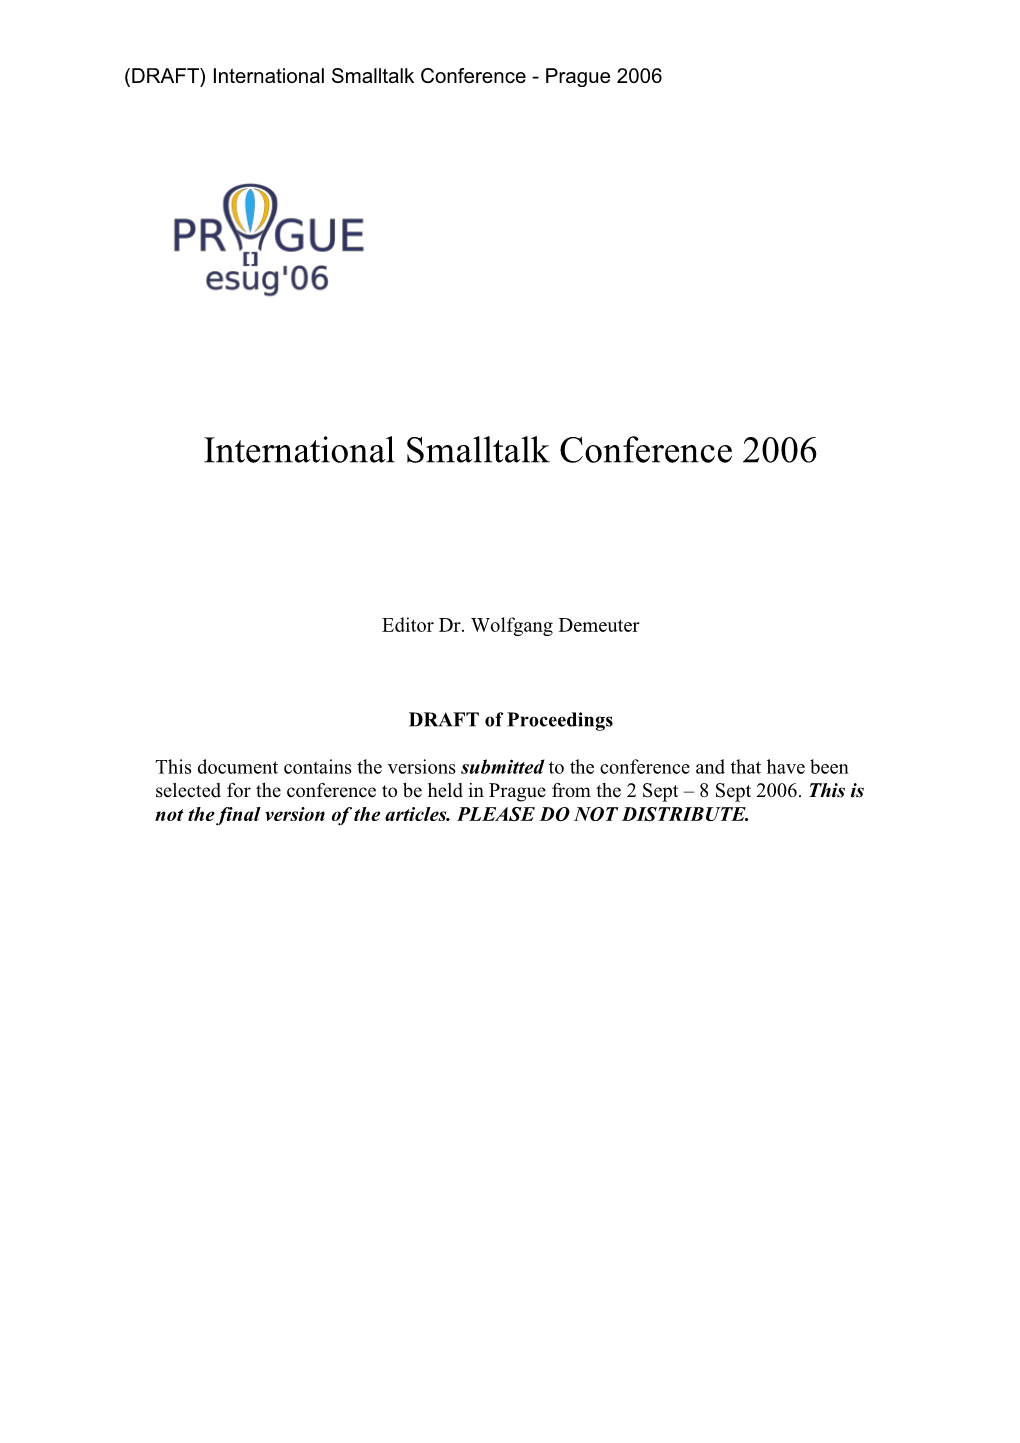 International Smalltalk Conference 2006